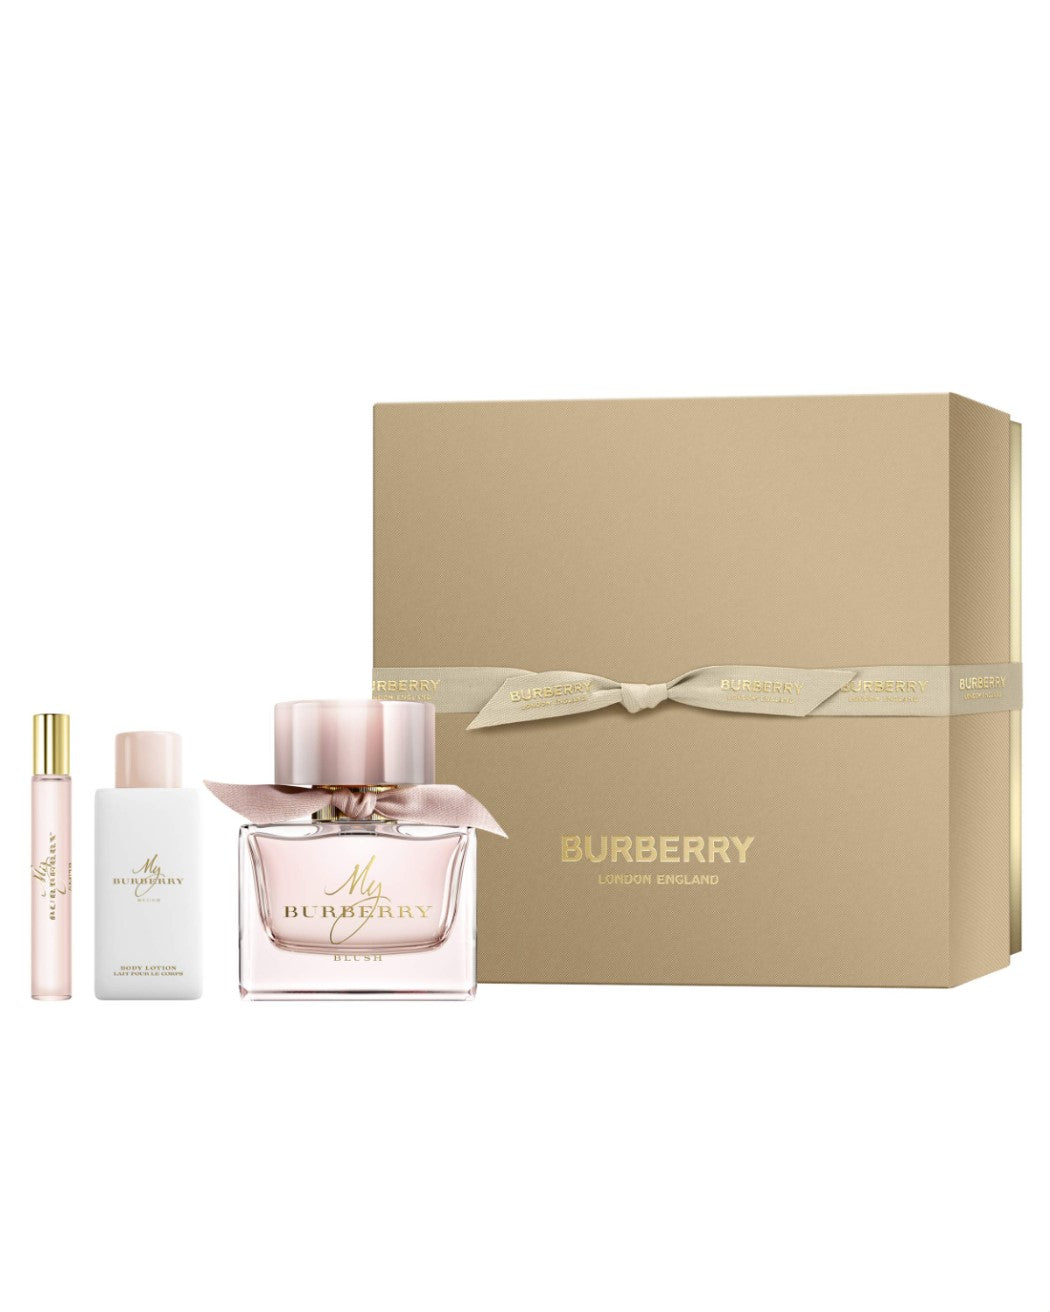 3-Pc. My Burberry Blush Eau de Parfum Gift Set